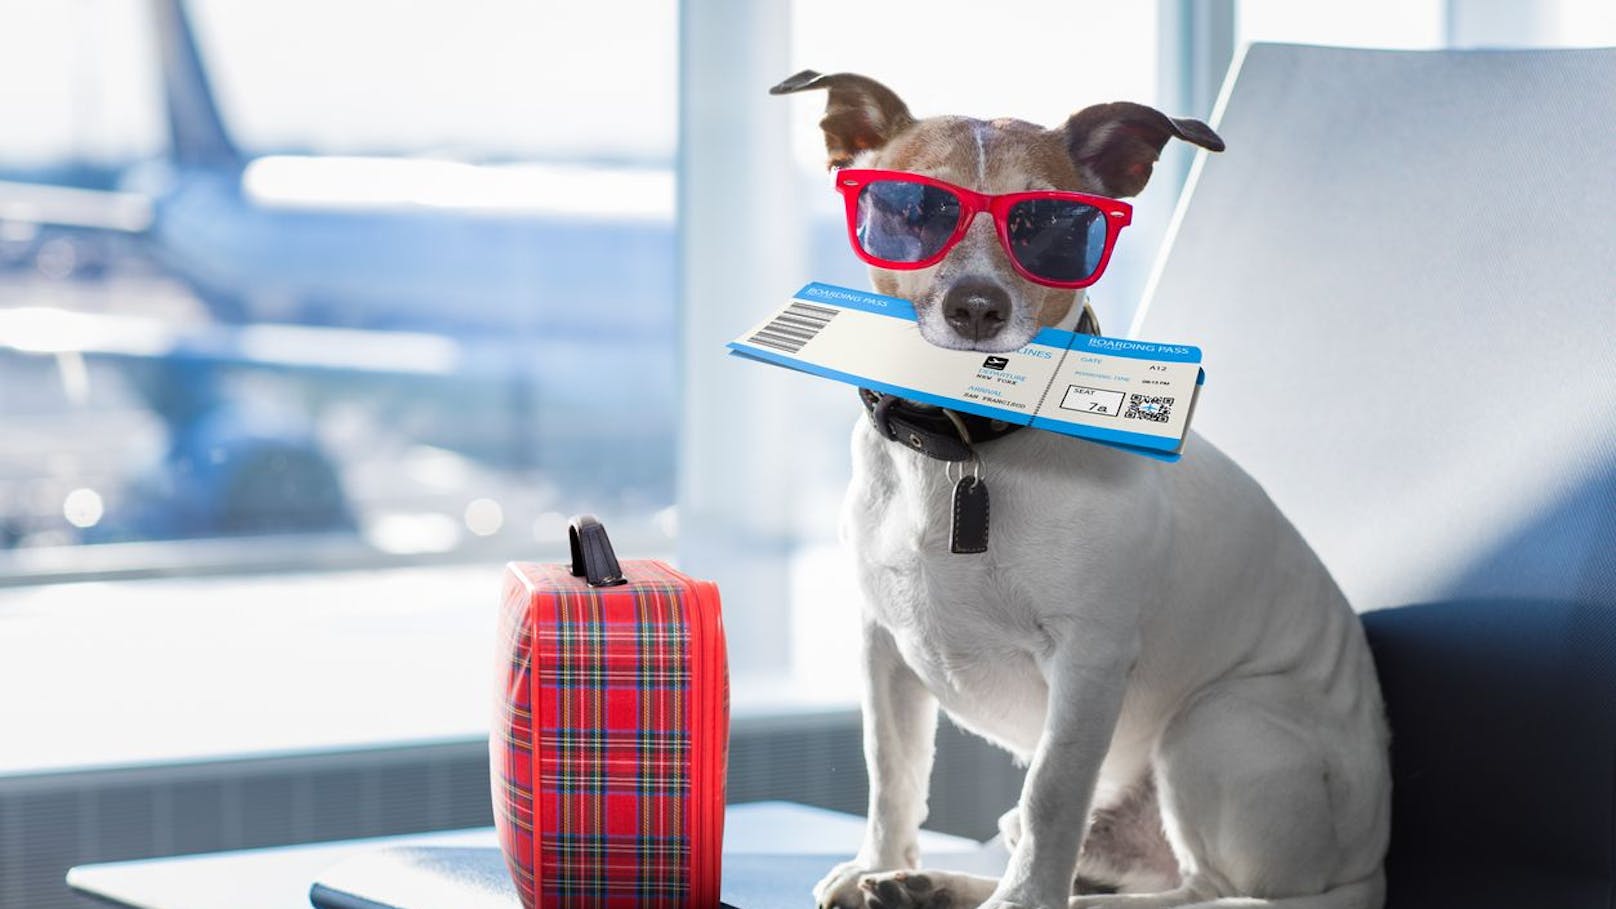 Ab Mai! So viel kostet die erste Airline für Hunde